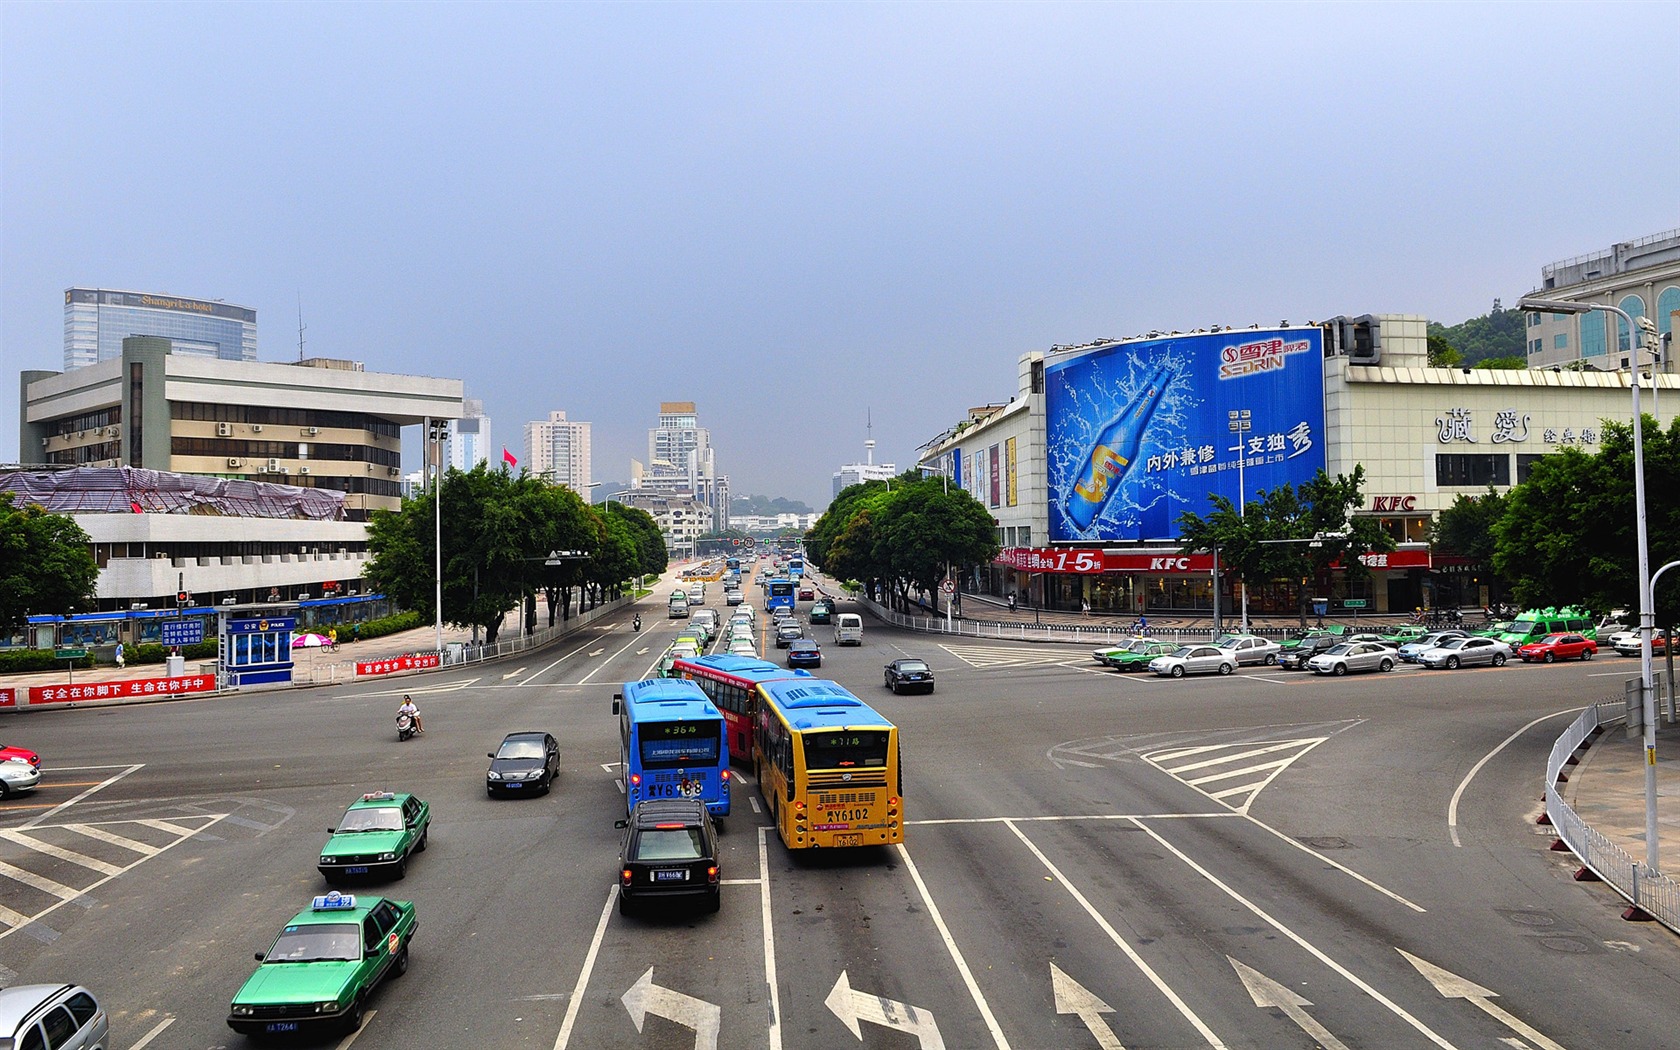 rue Fuzhou avec la prise de vue (photo Travaux de changement) #3 - 1680x1050